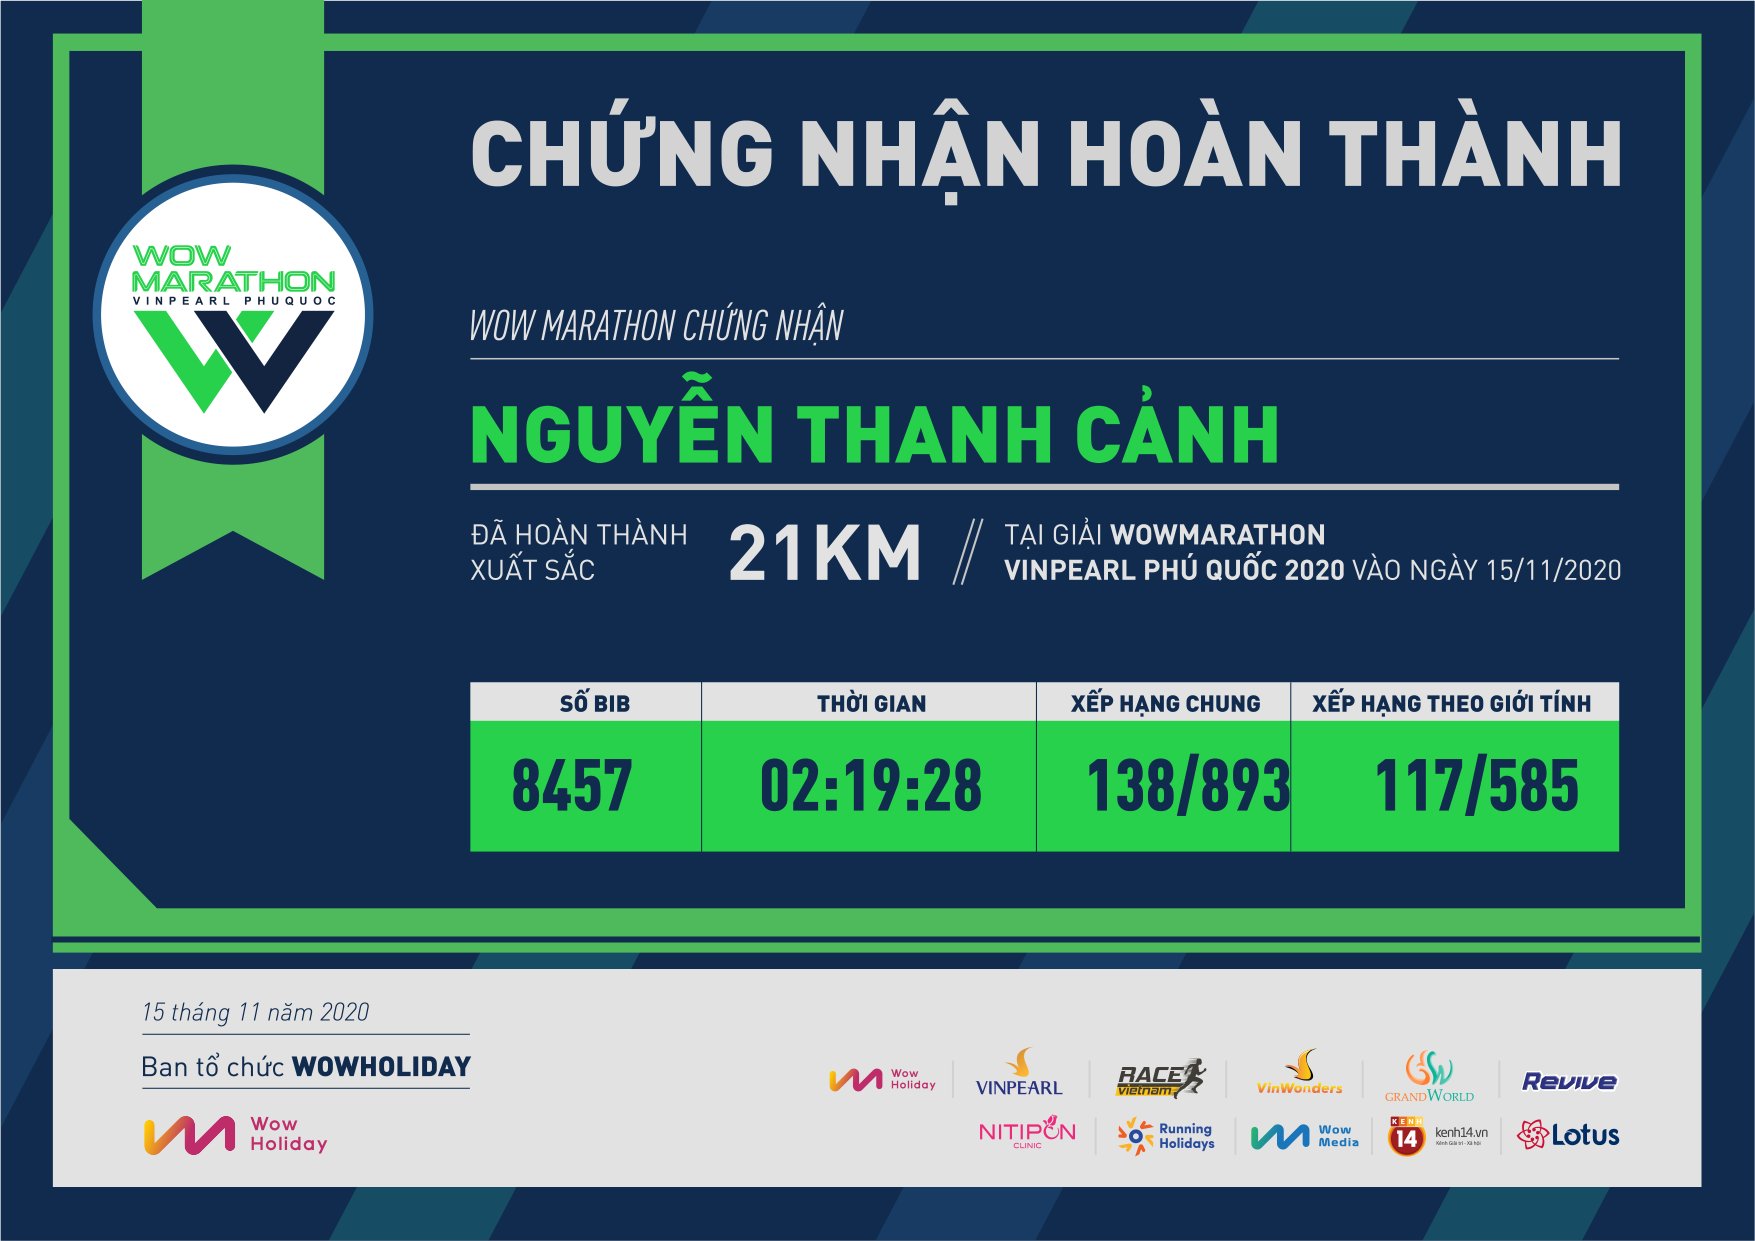 8457 - Nguyễn Thanh Cảnh